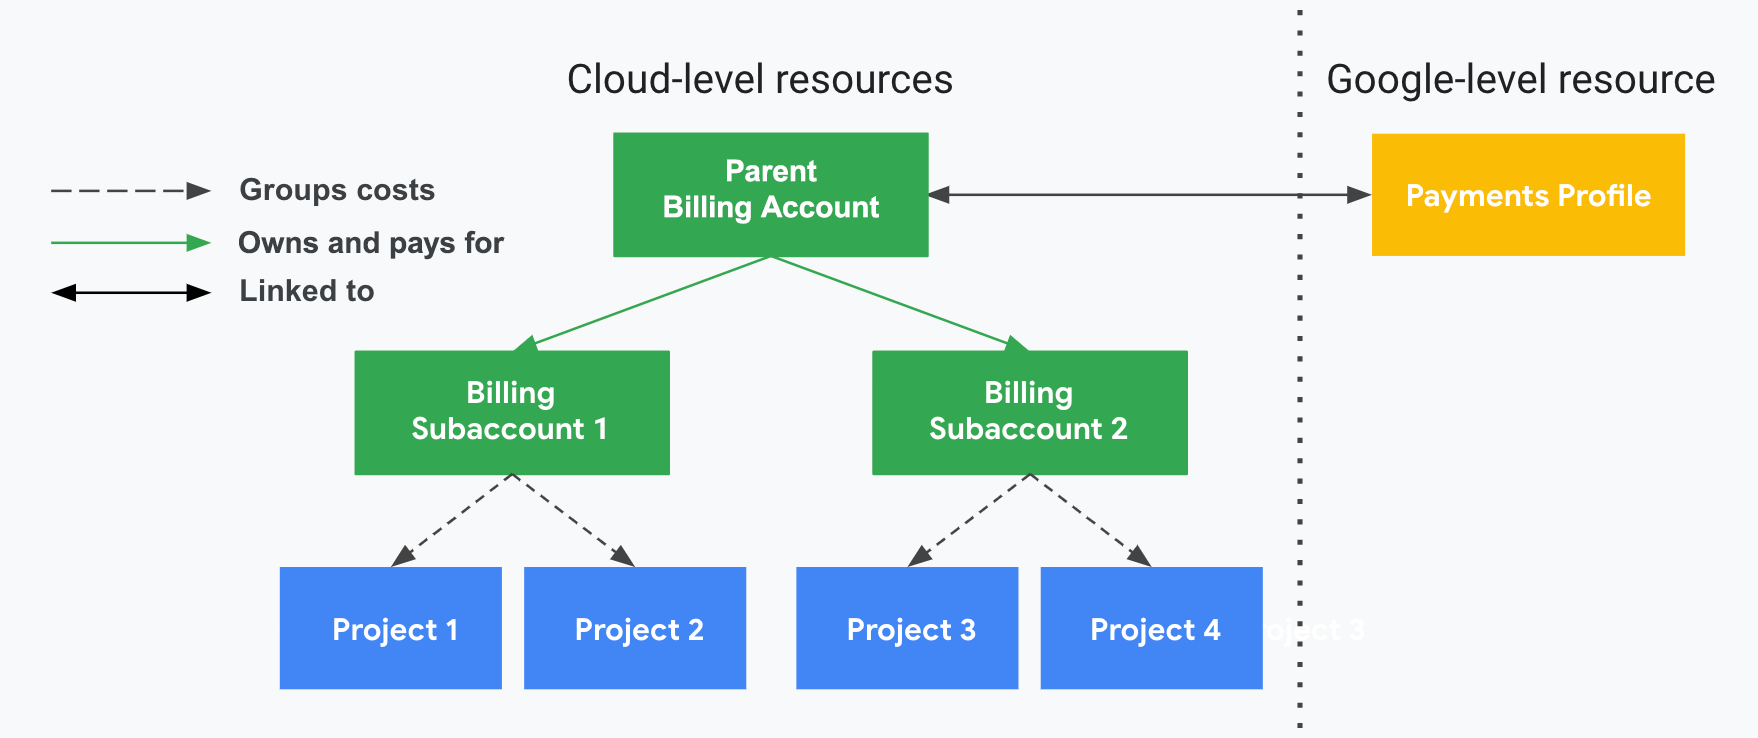 说明了项目与 Cloud Billing 帐号、Cloud Billing 子帐号以及您的付款资料之间的关系。一侧显示了您的 Cloud 级资源（Cloud Billing 帐号、子帐号和关联项目），另一侧显示了您的 Google 级资源（付款资料），两侧由垂直虚线分隔。项目使用费按关联的 Cloud Billing 子帐号归为一组并计算小计金额。子帐号由与付款资料关联的父级 Cloud Billing 帐号支付。